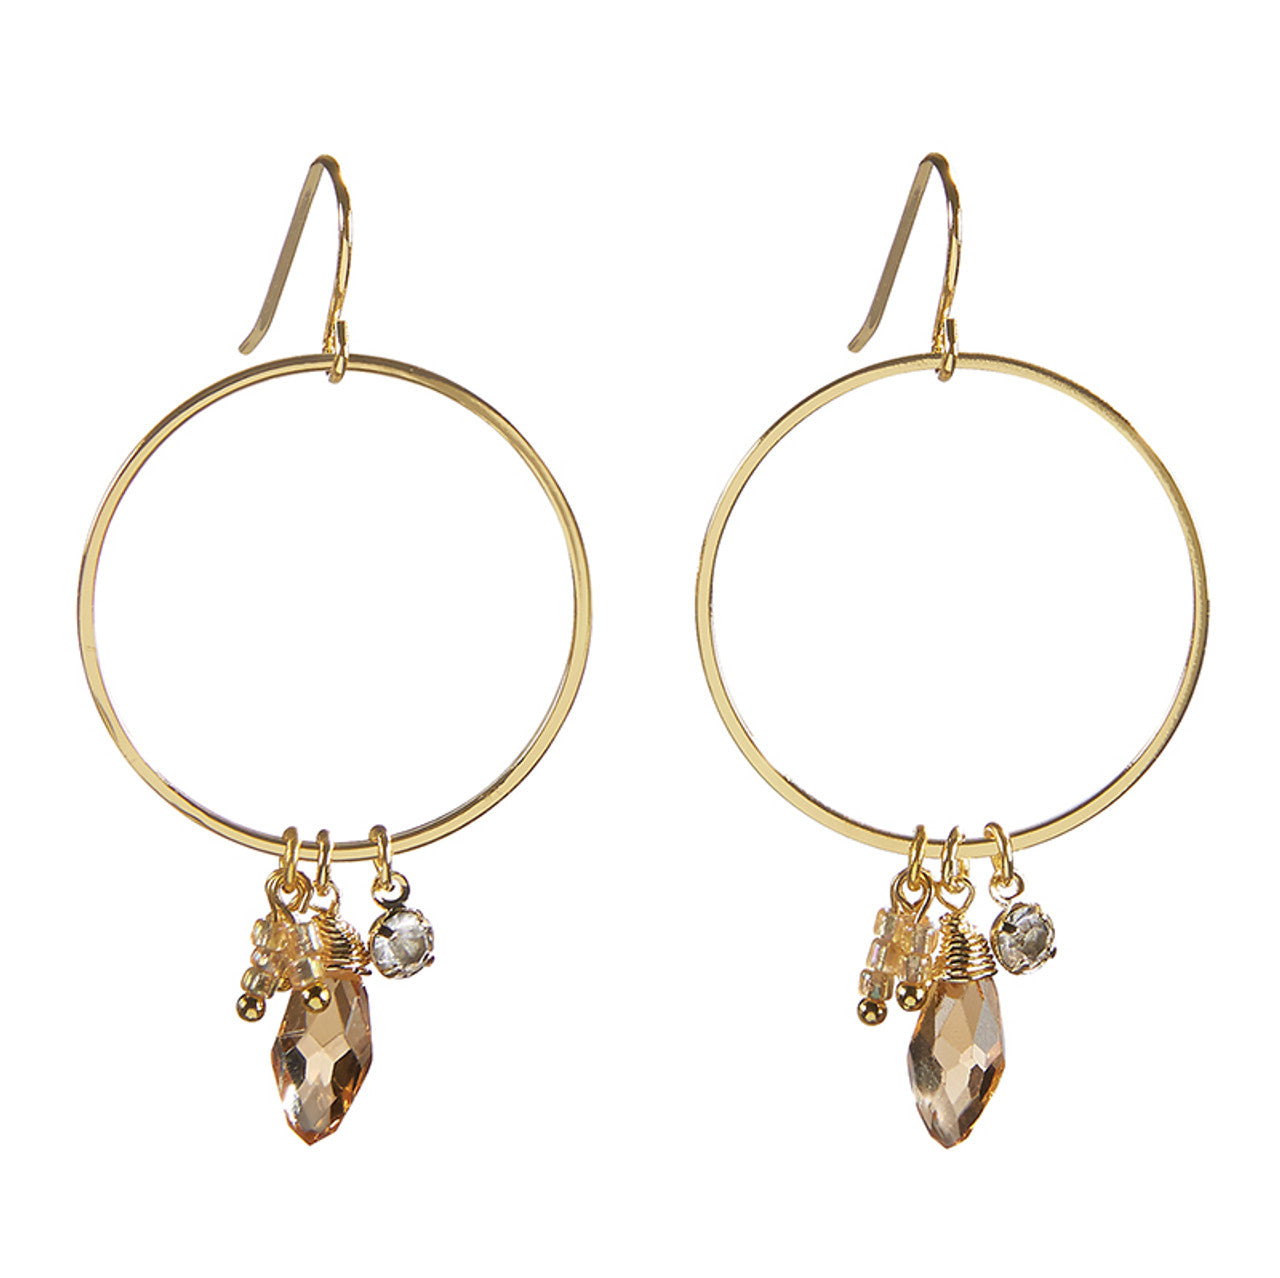 Mosaic Dangle Hoops Earrings in Gold | Cut Glass Crystal Gemstones